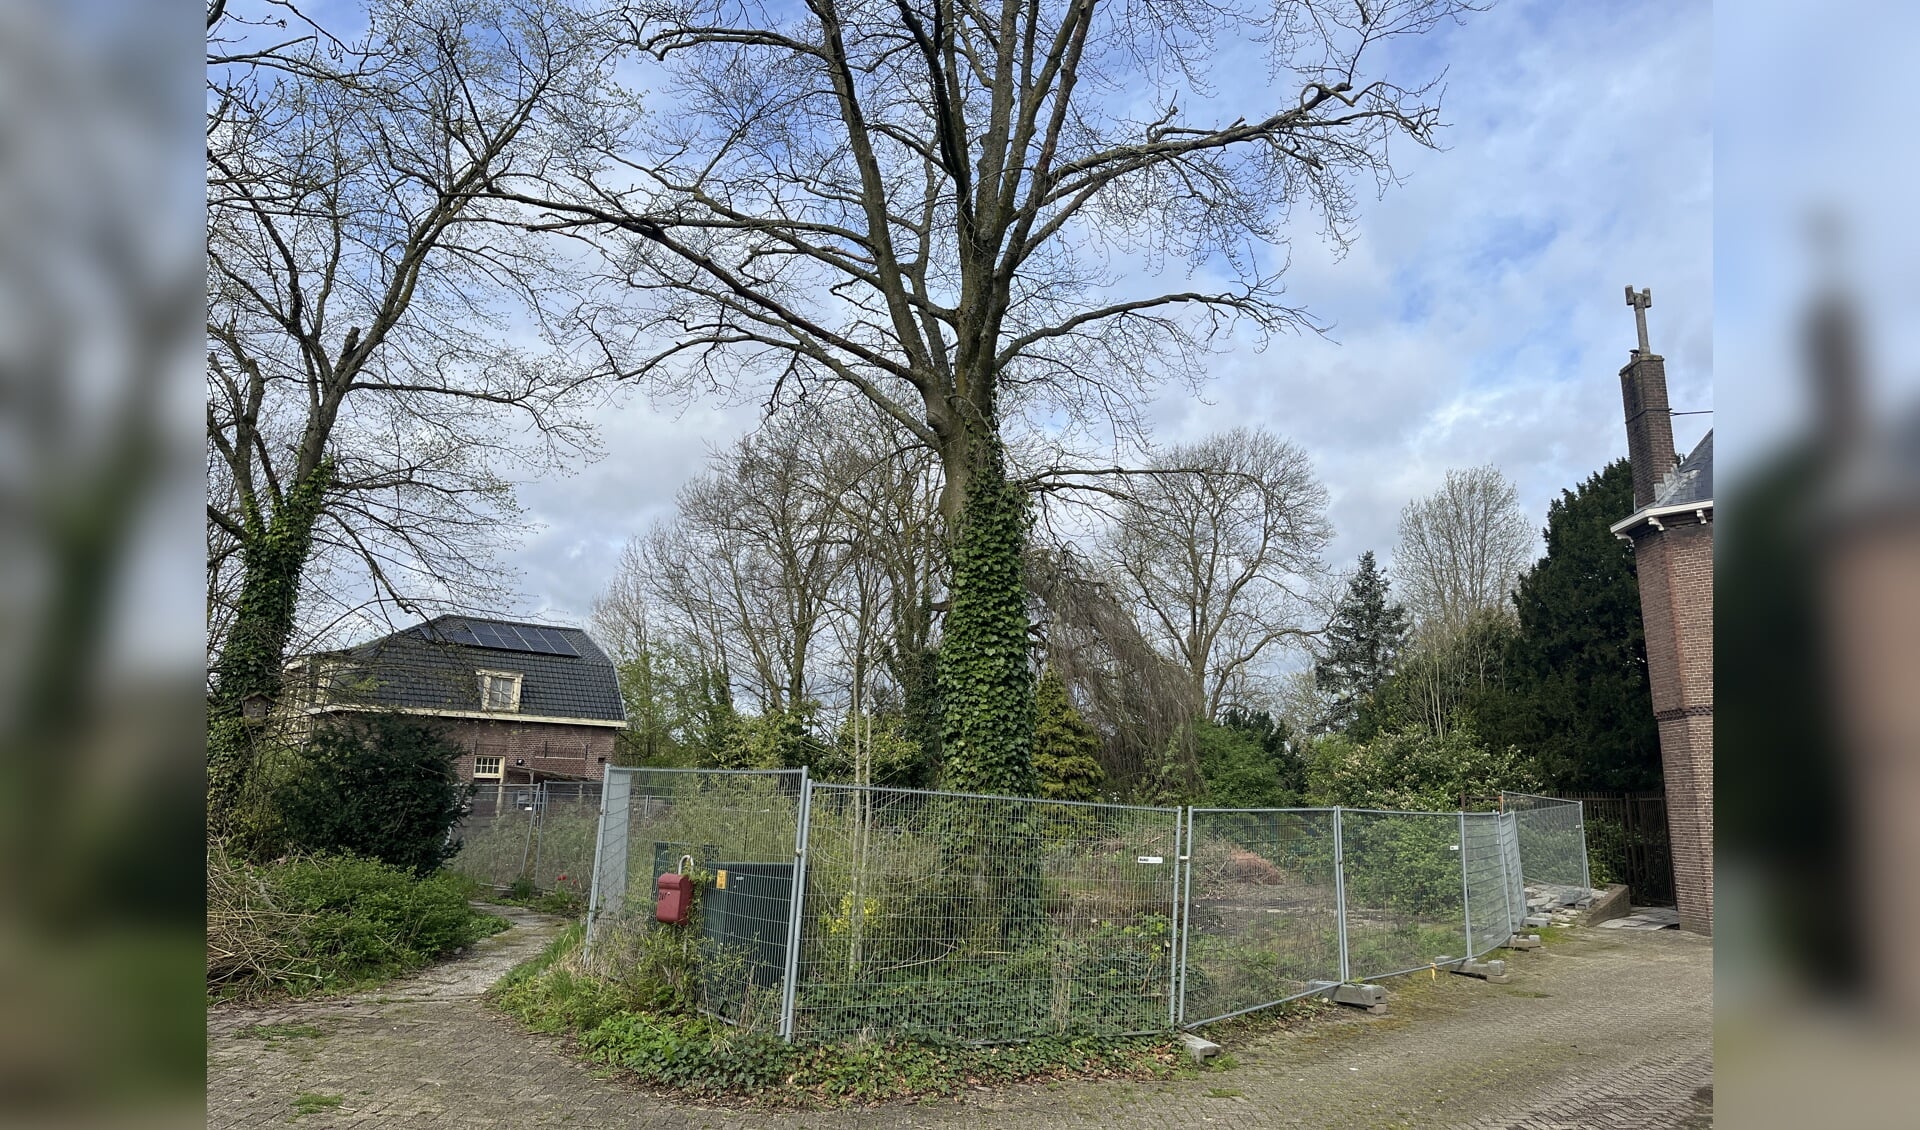 Locatie Veerhuys Dorpsdijk in Rhoon.